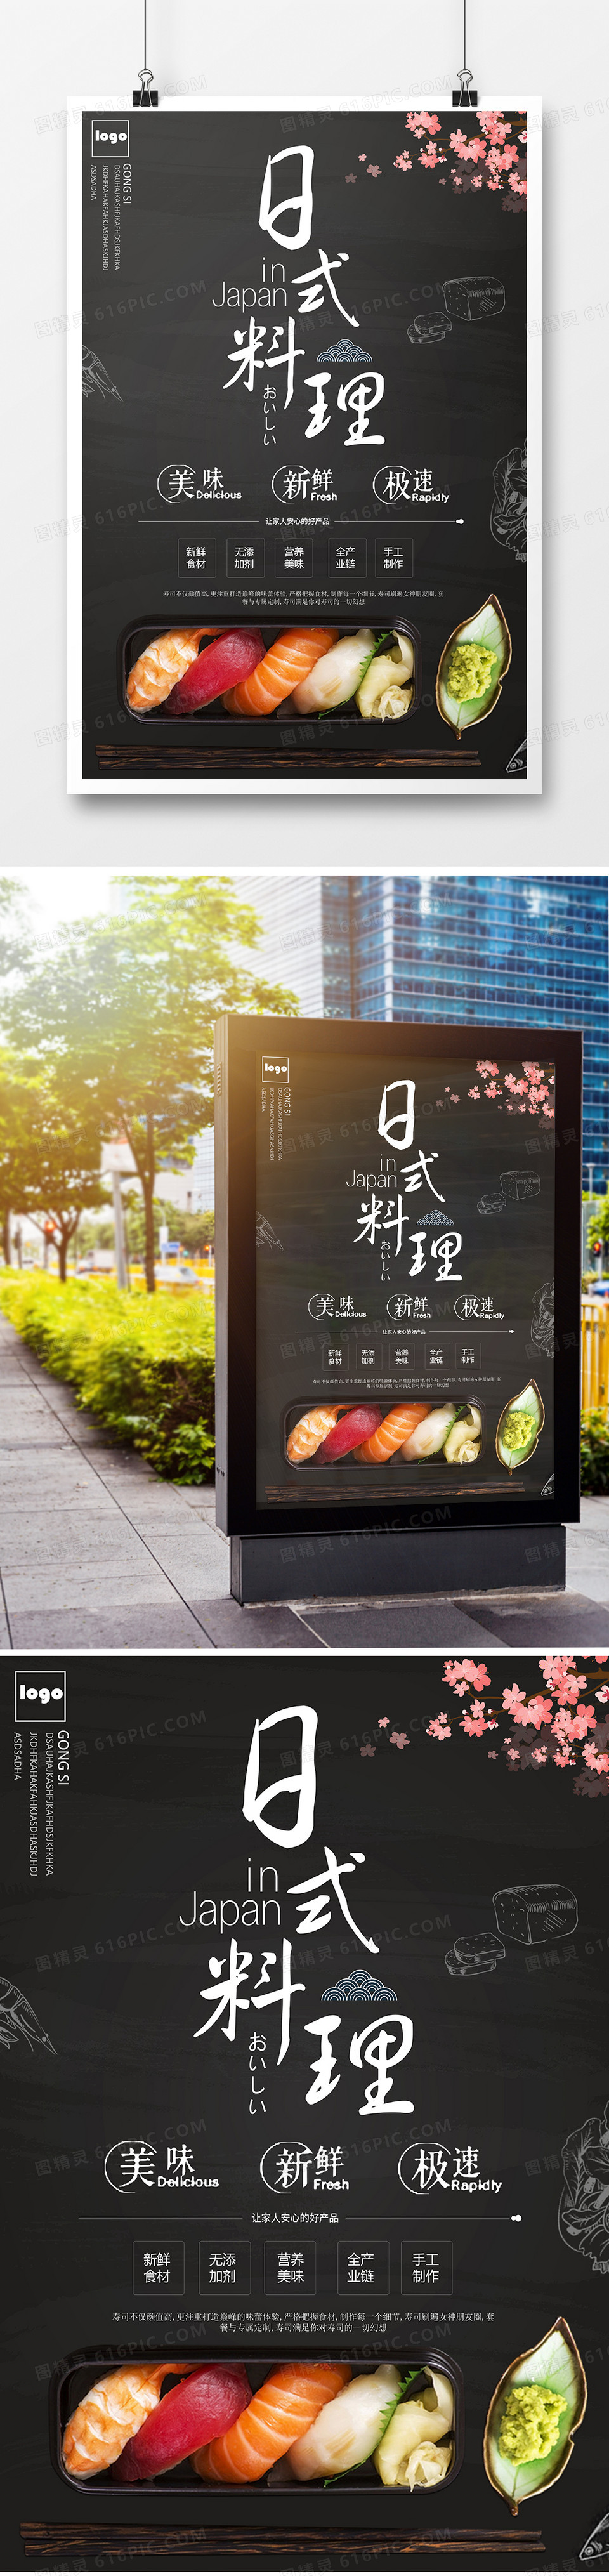 日式料理促销宣传海报简约大气风格设计